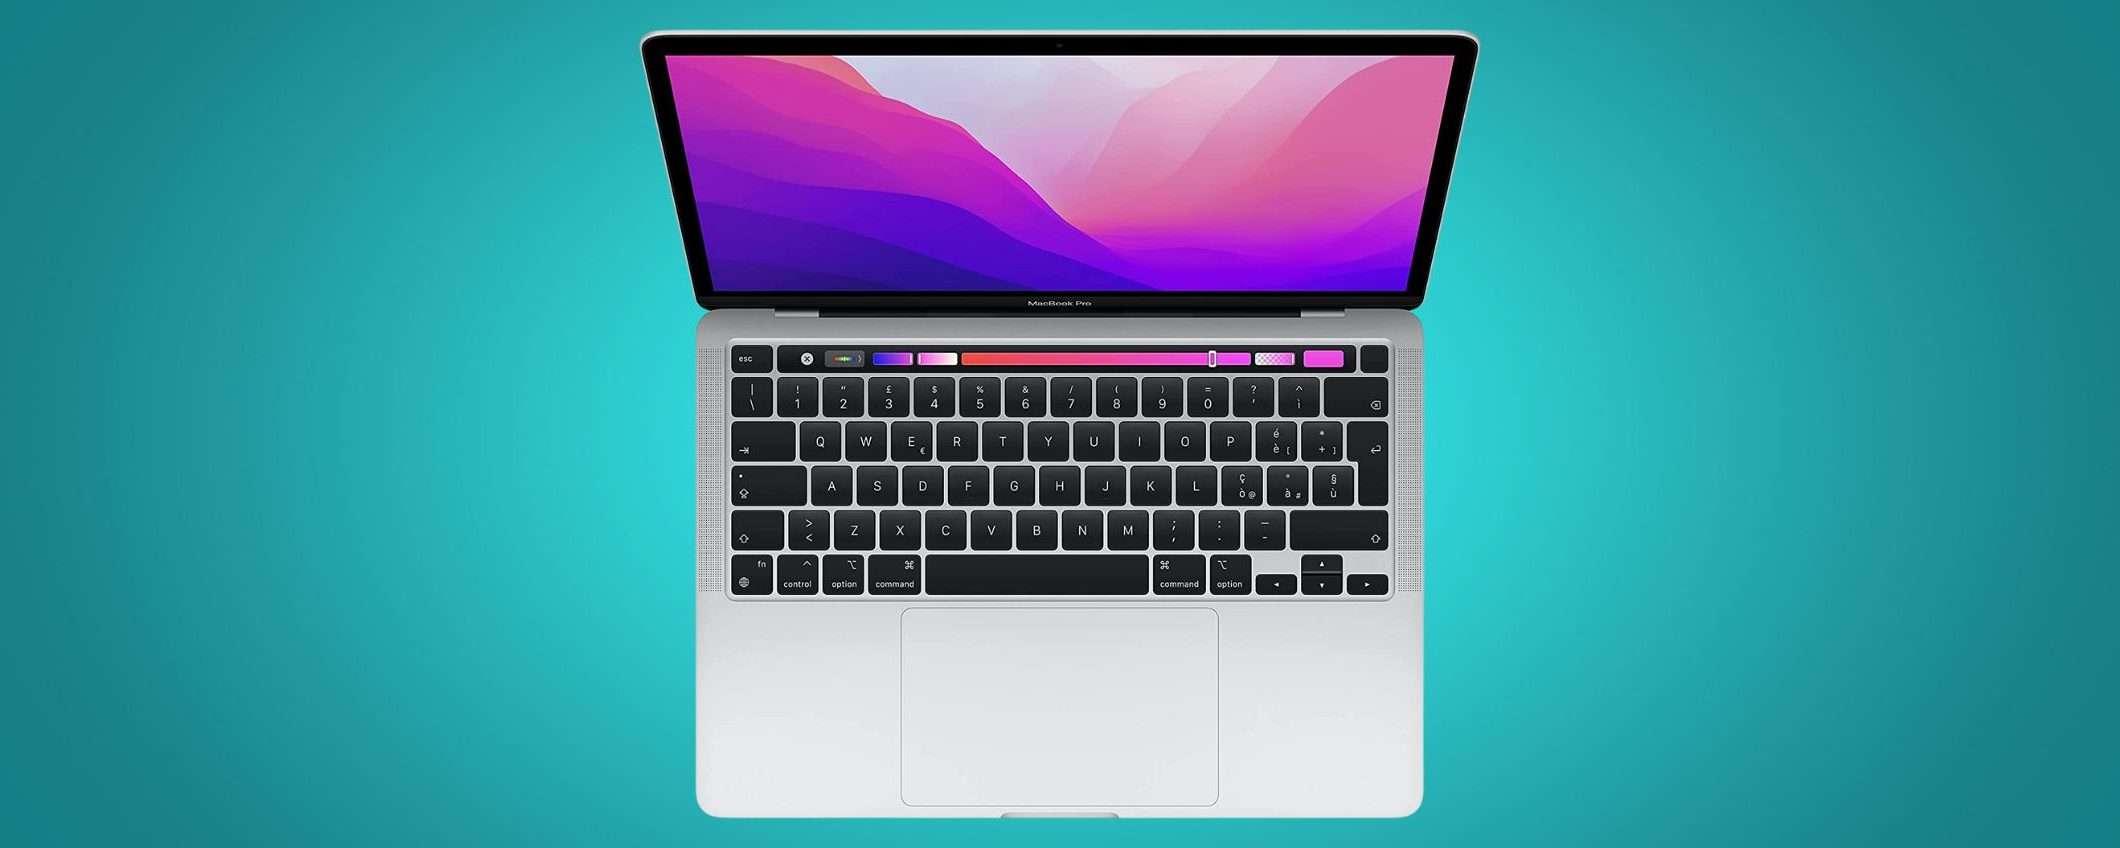 MacBook con touchscreen per un'esperienza unificata